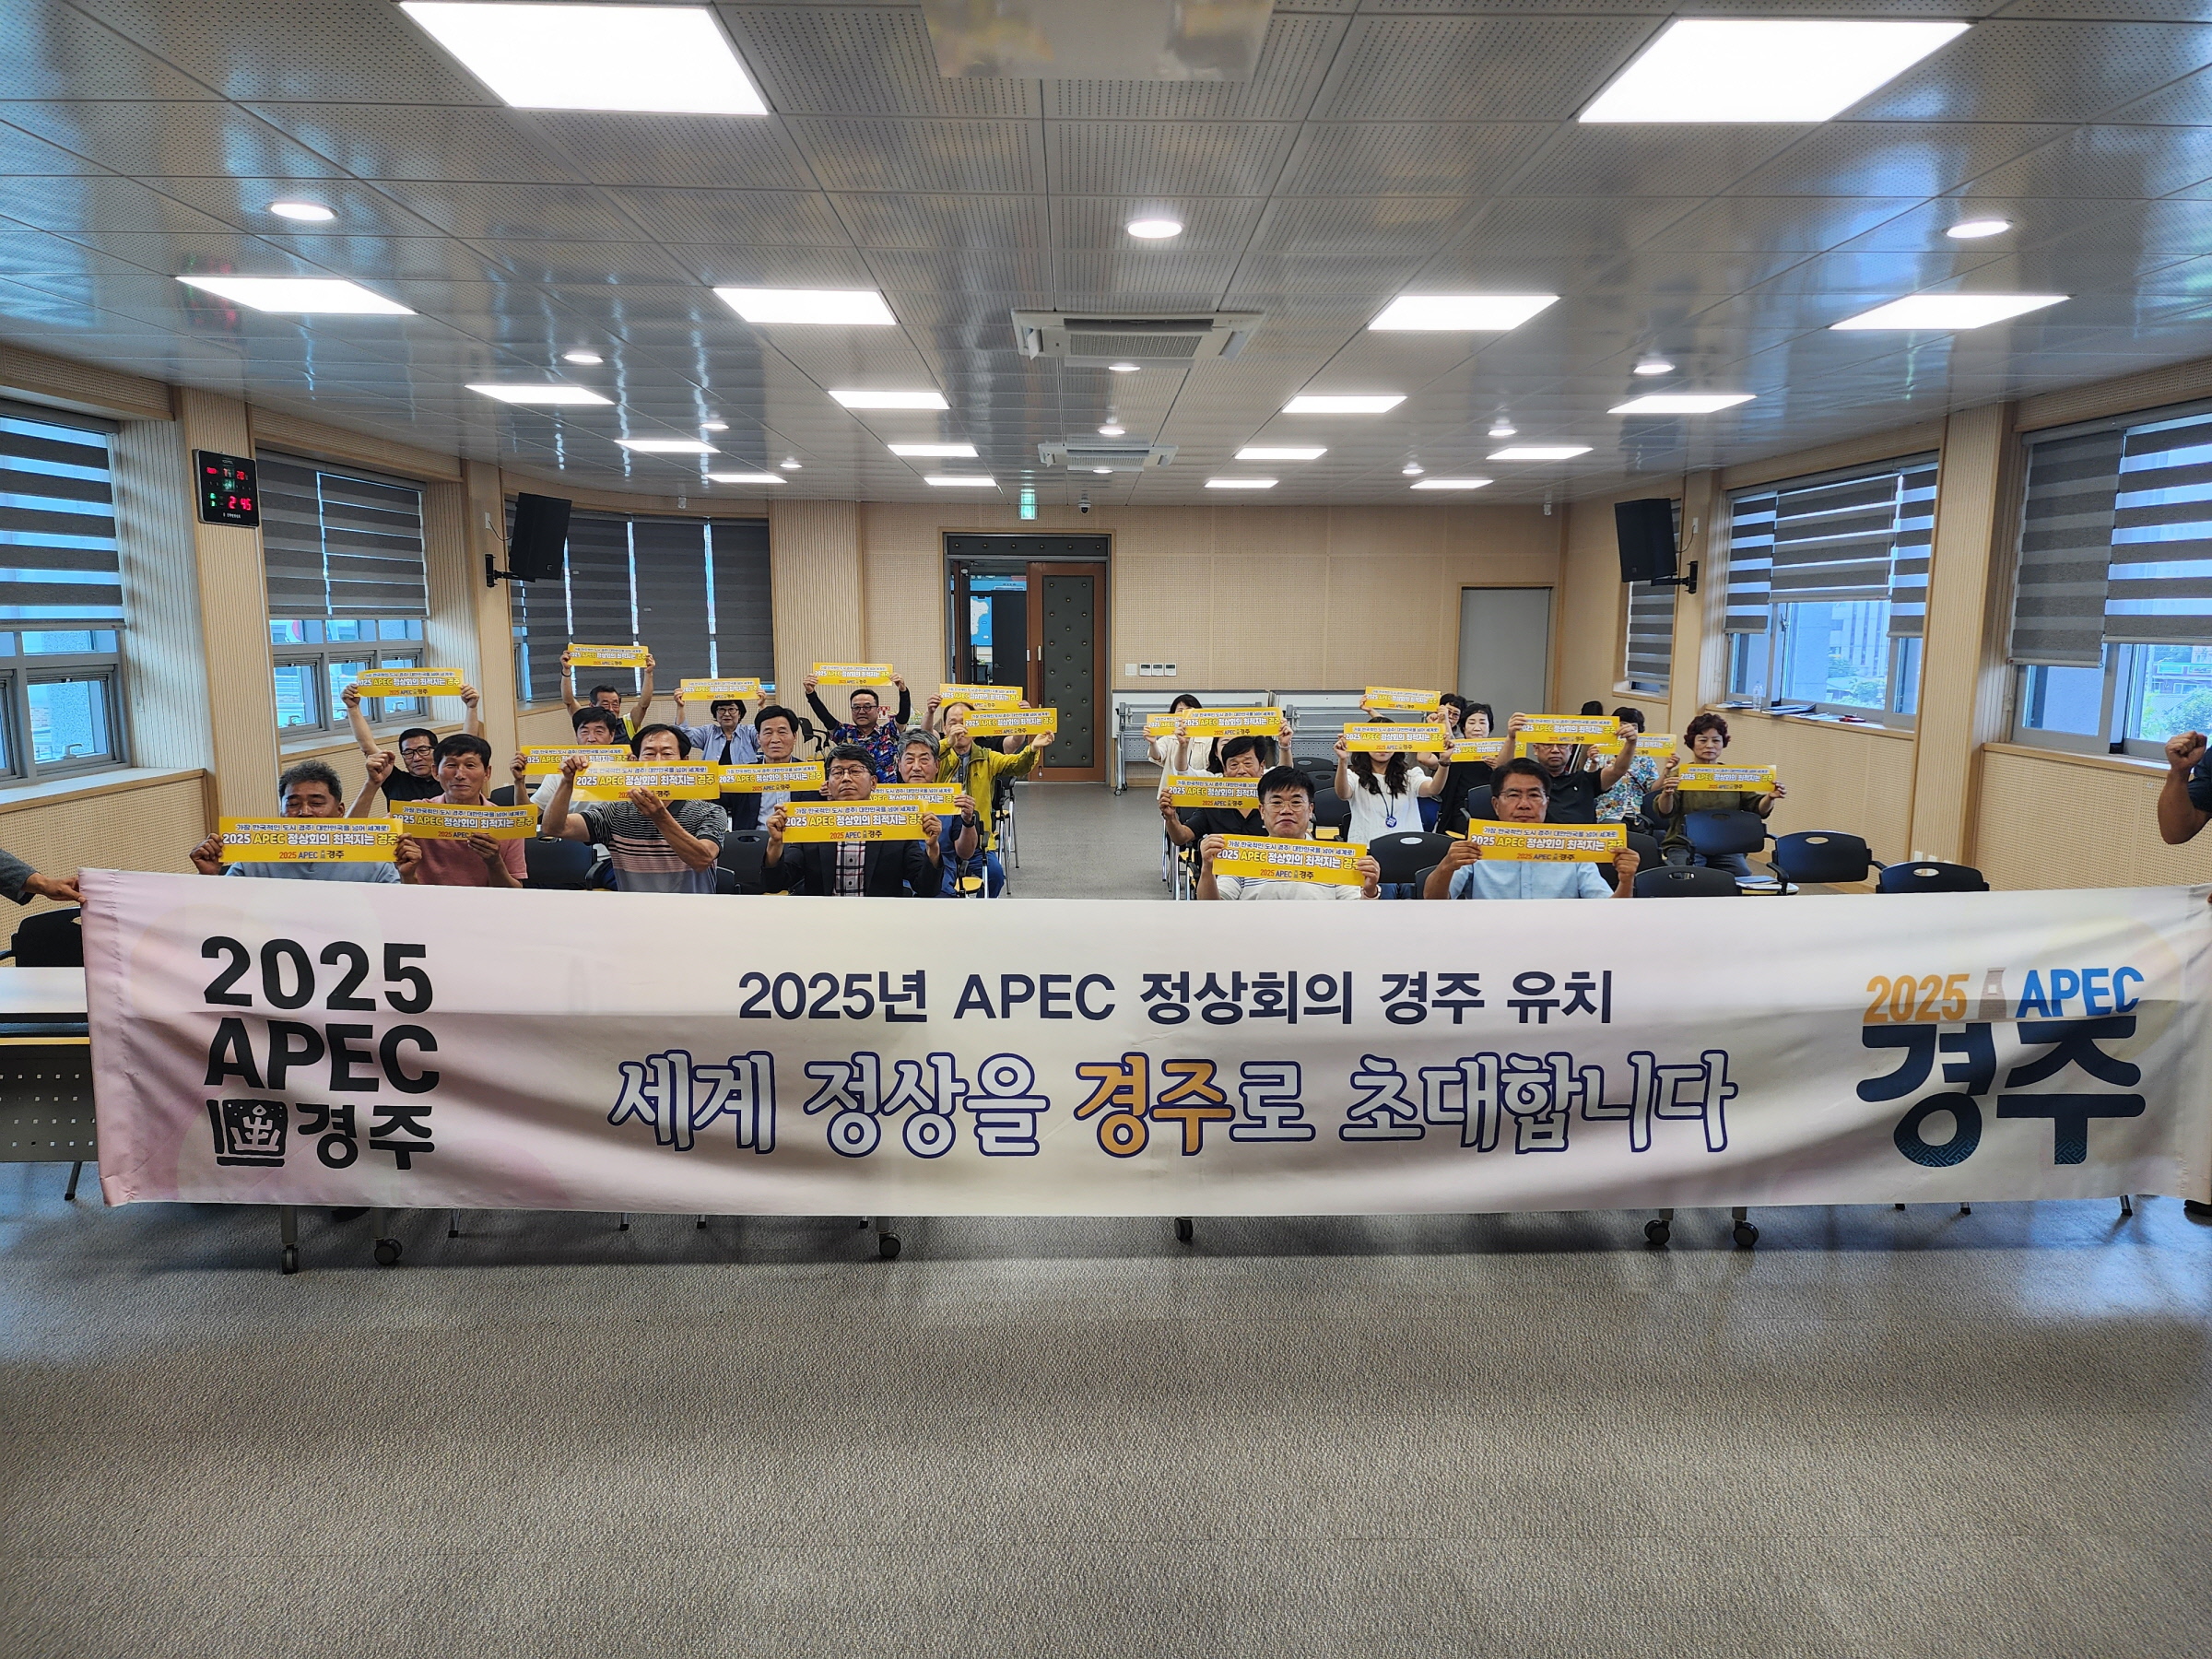 천북면, 농촌협약사업 주민설명회에서 APEC 정상회의 경주 유치 홍보